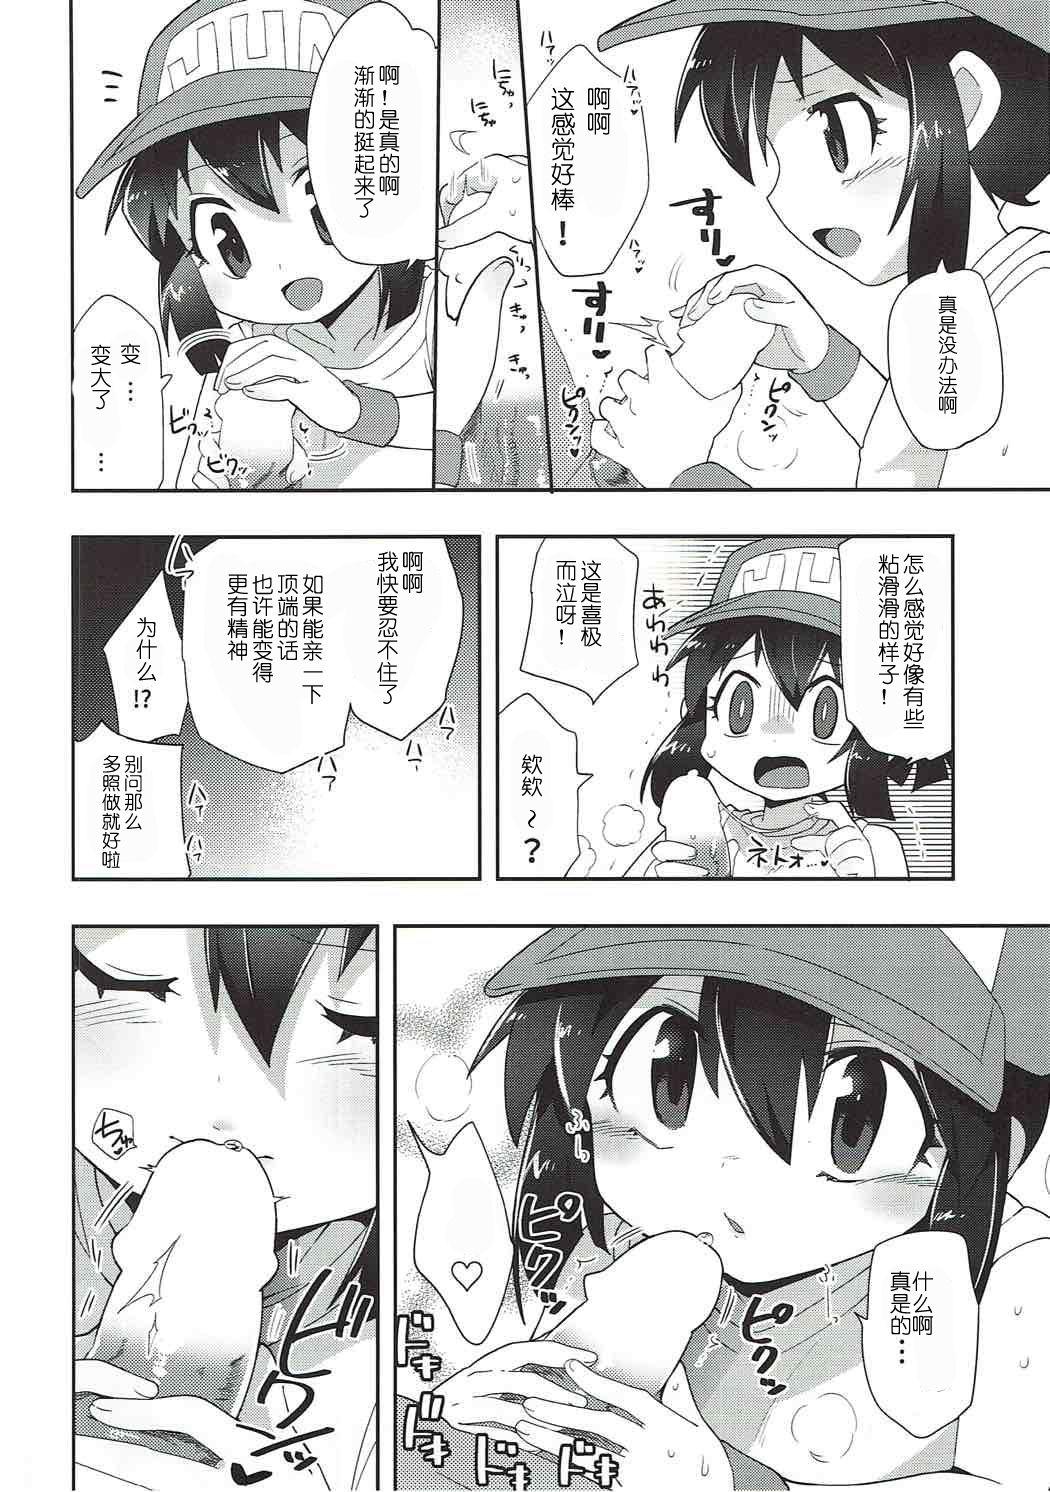 Bro Genki ga Areba Nandemo Dekiru! - Bakusou kyoudai lets and go Orgasm - Page 9